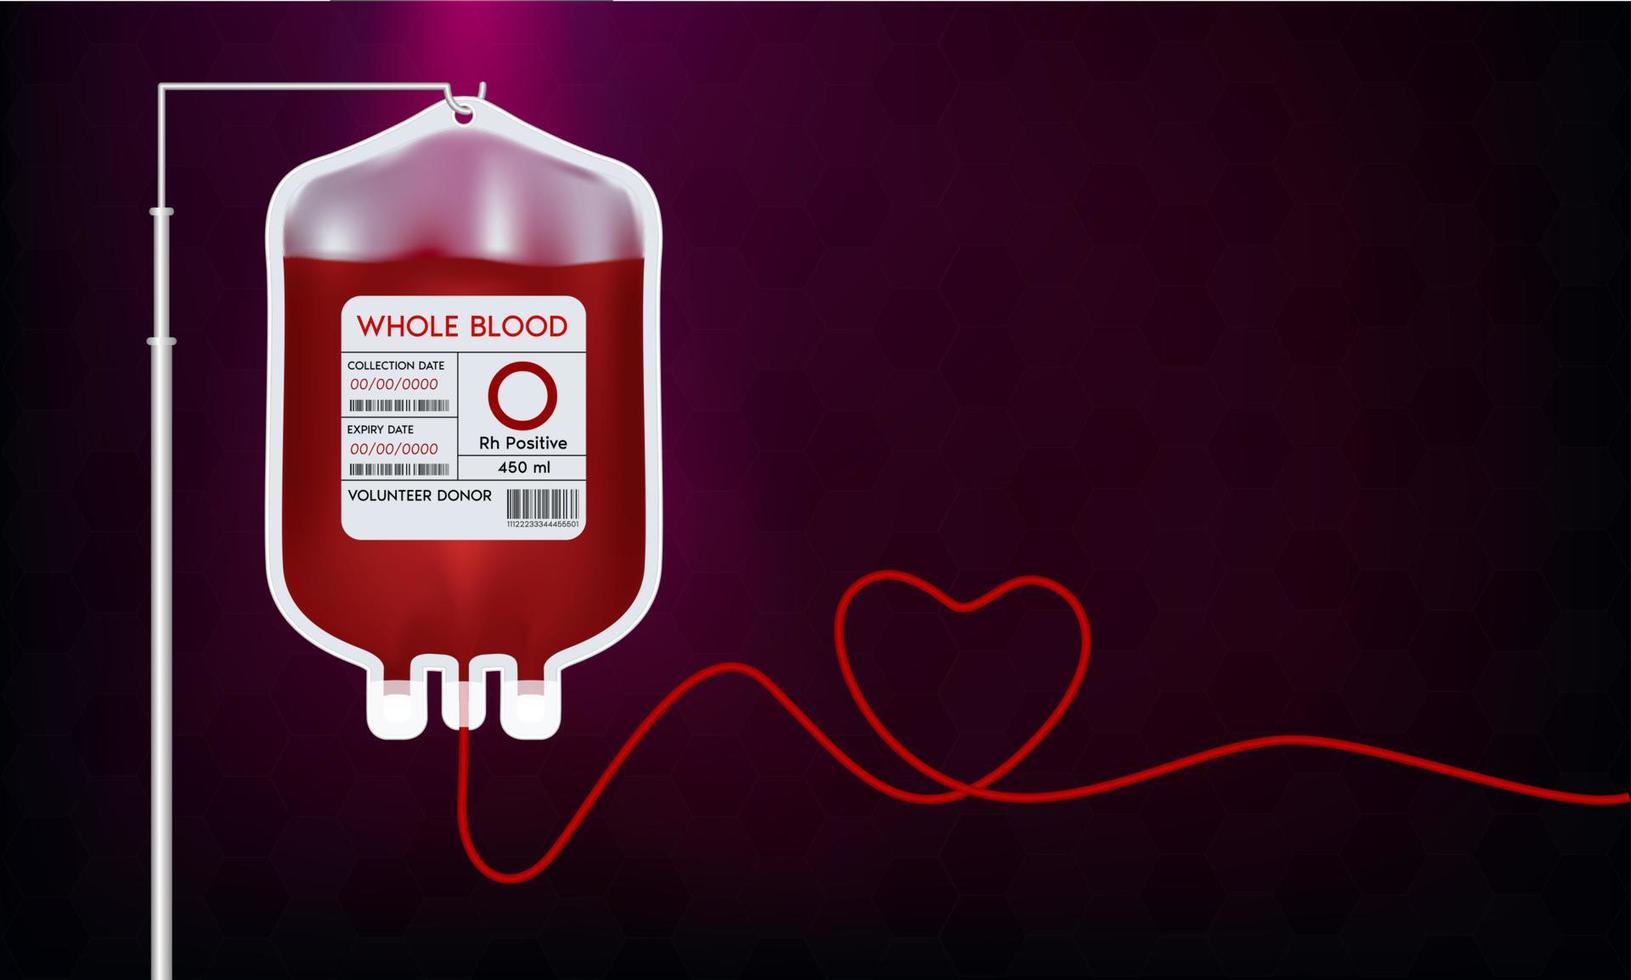 bolsa de sangre con etiqueta diferente grupo sanguíneo o sistema. ideas de donación de sangre para ayudar a los médicos heridos. ilustración vectorial 3d eps10 vector